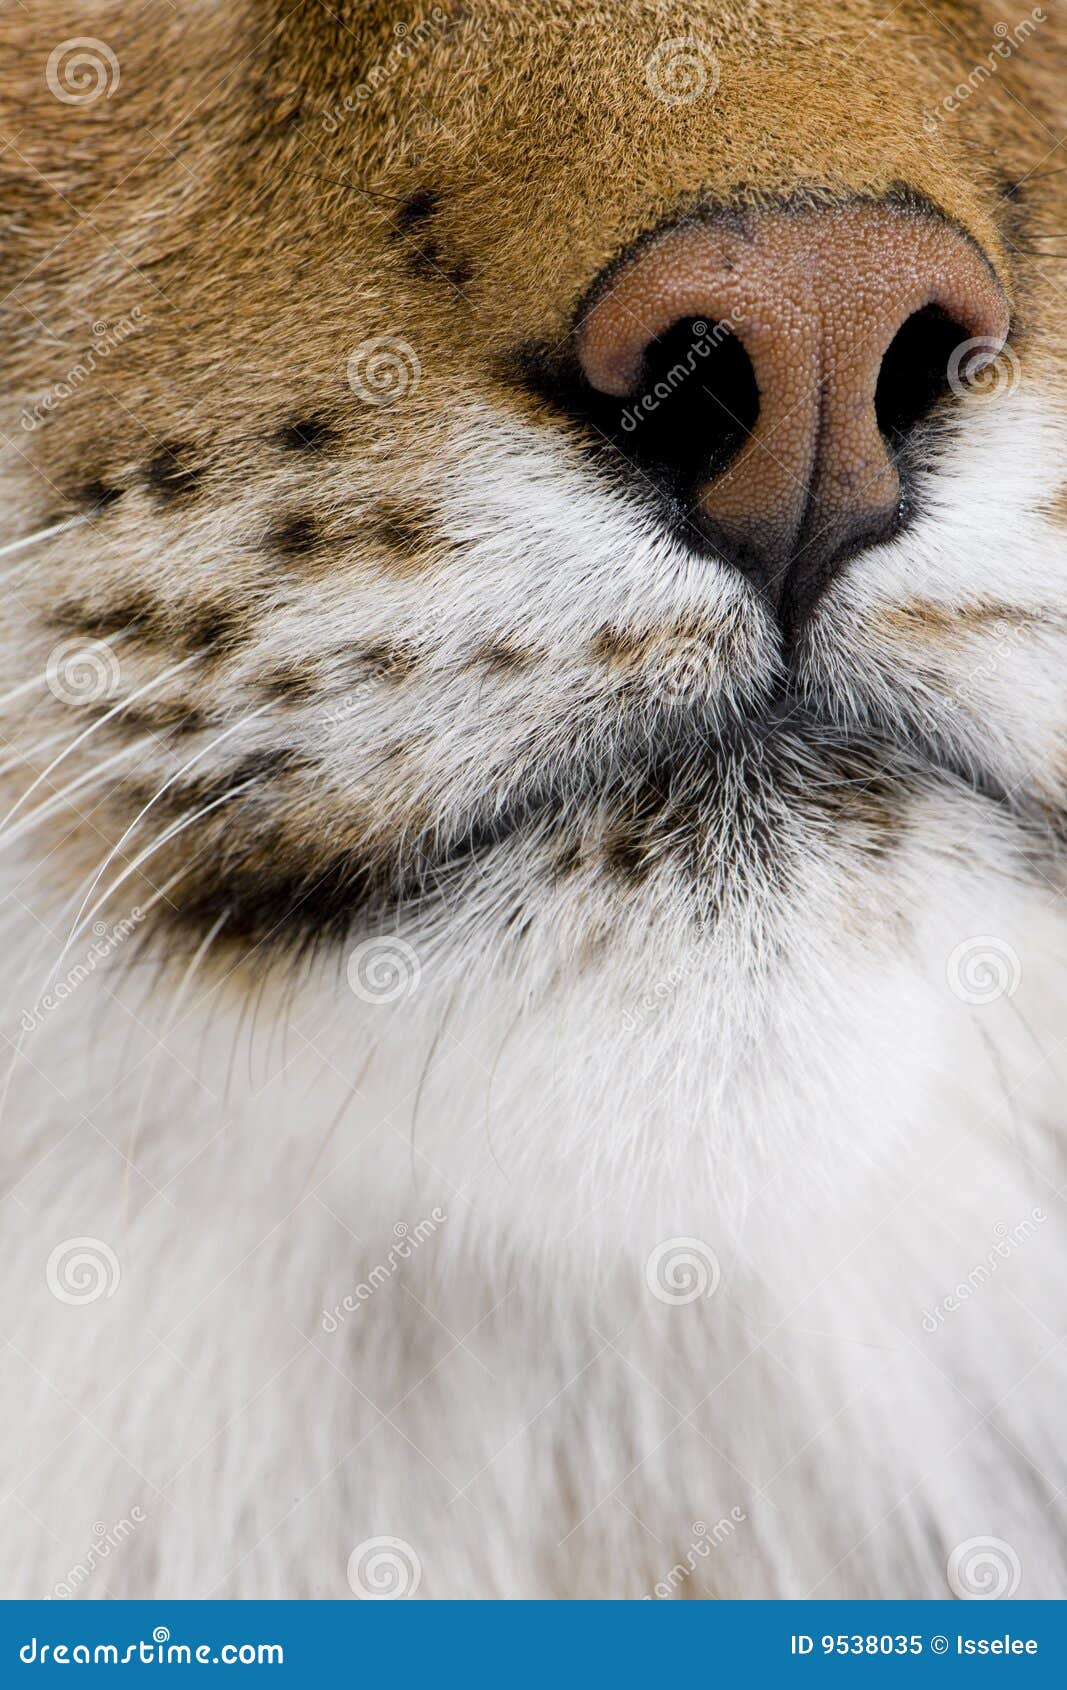 close-up on a feline's snout - eurasian lynx